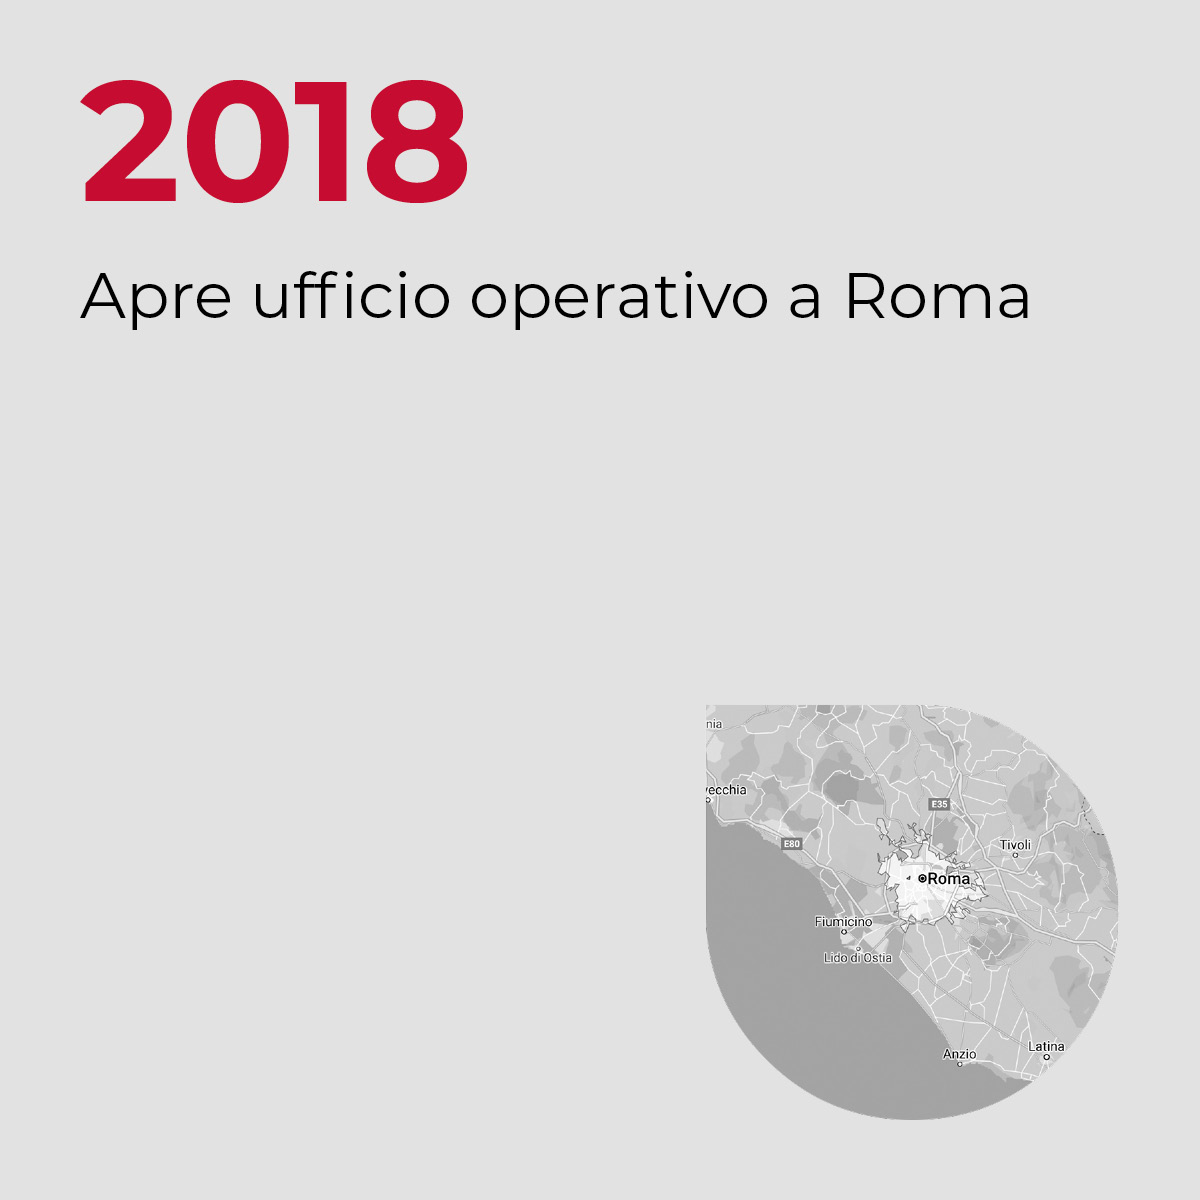 2018, Apre ufficio operativo a Roma